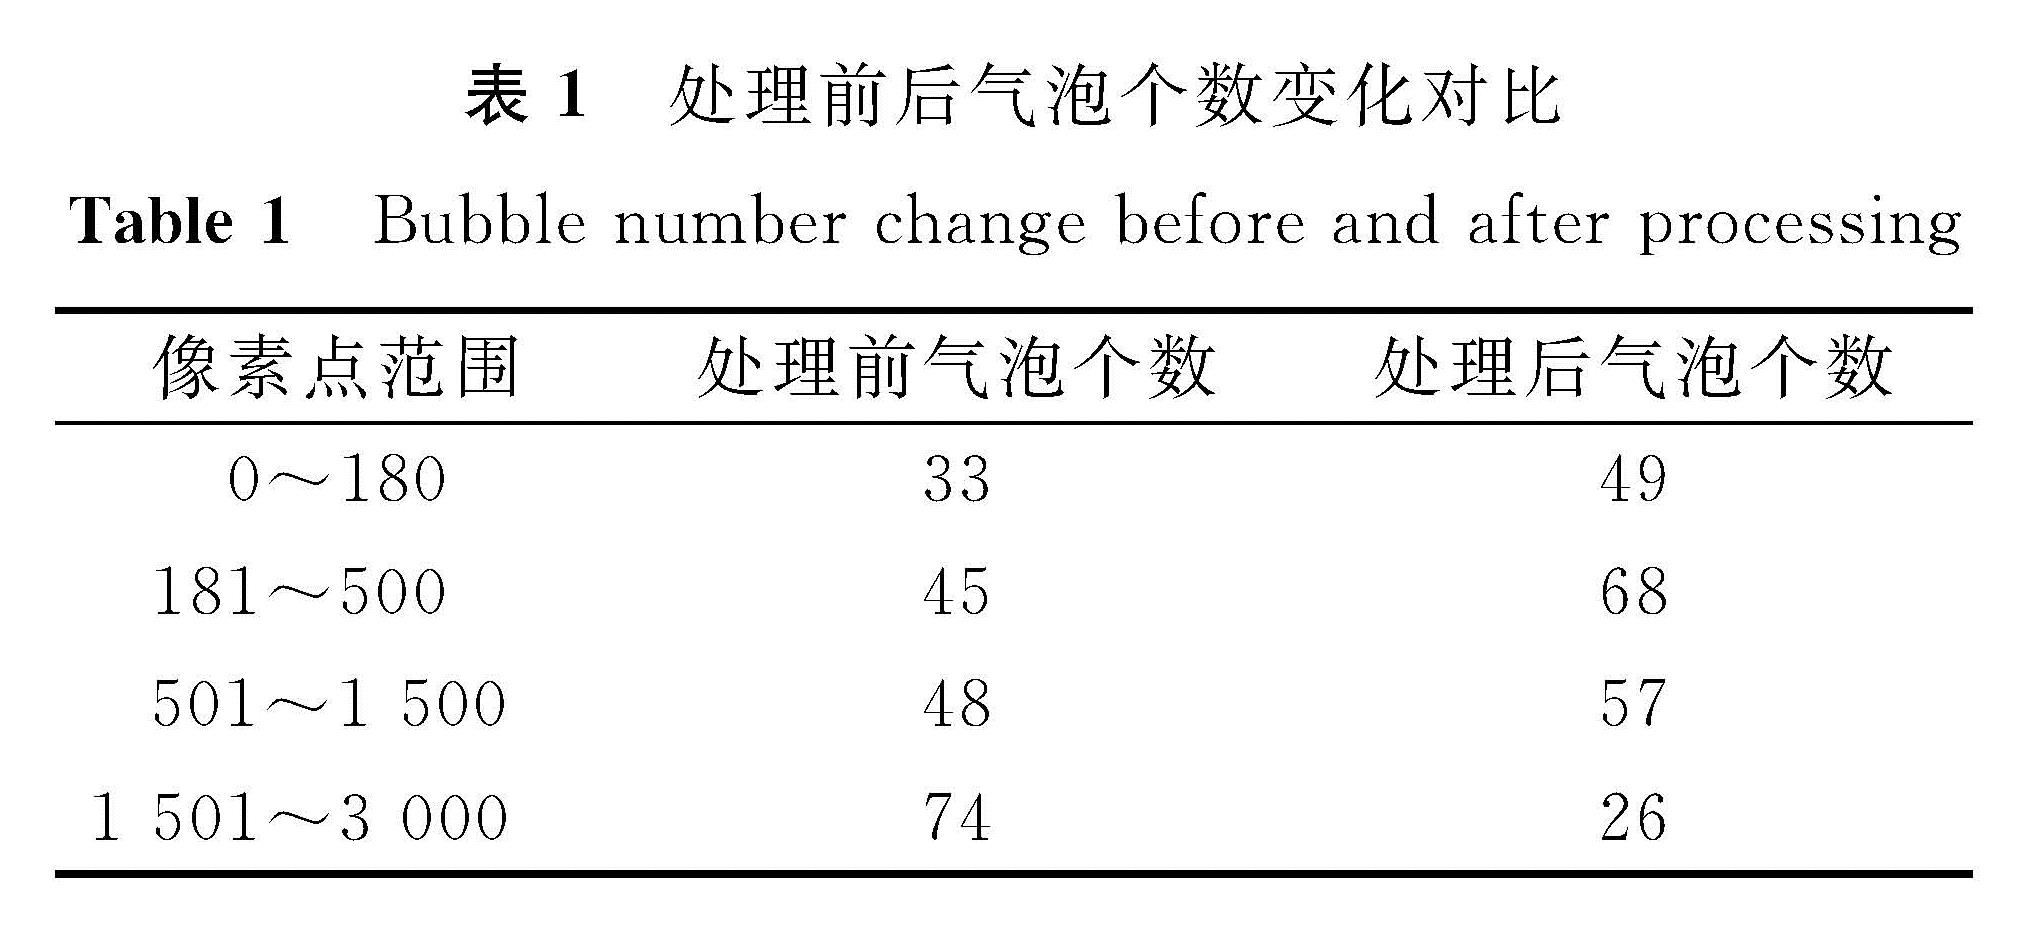 表1 处理前后气泡个数变化对比<br/>Table 1 Bubble number change before and after processing